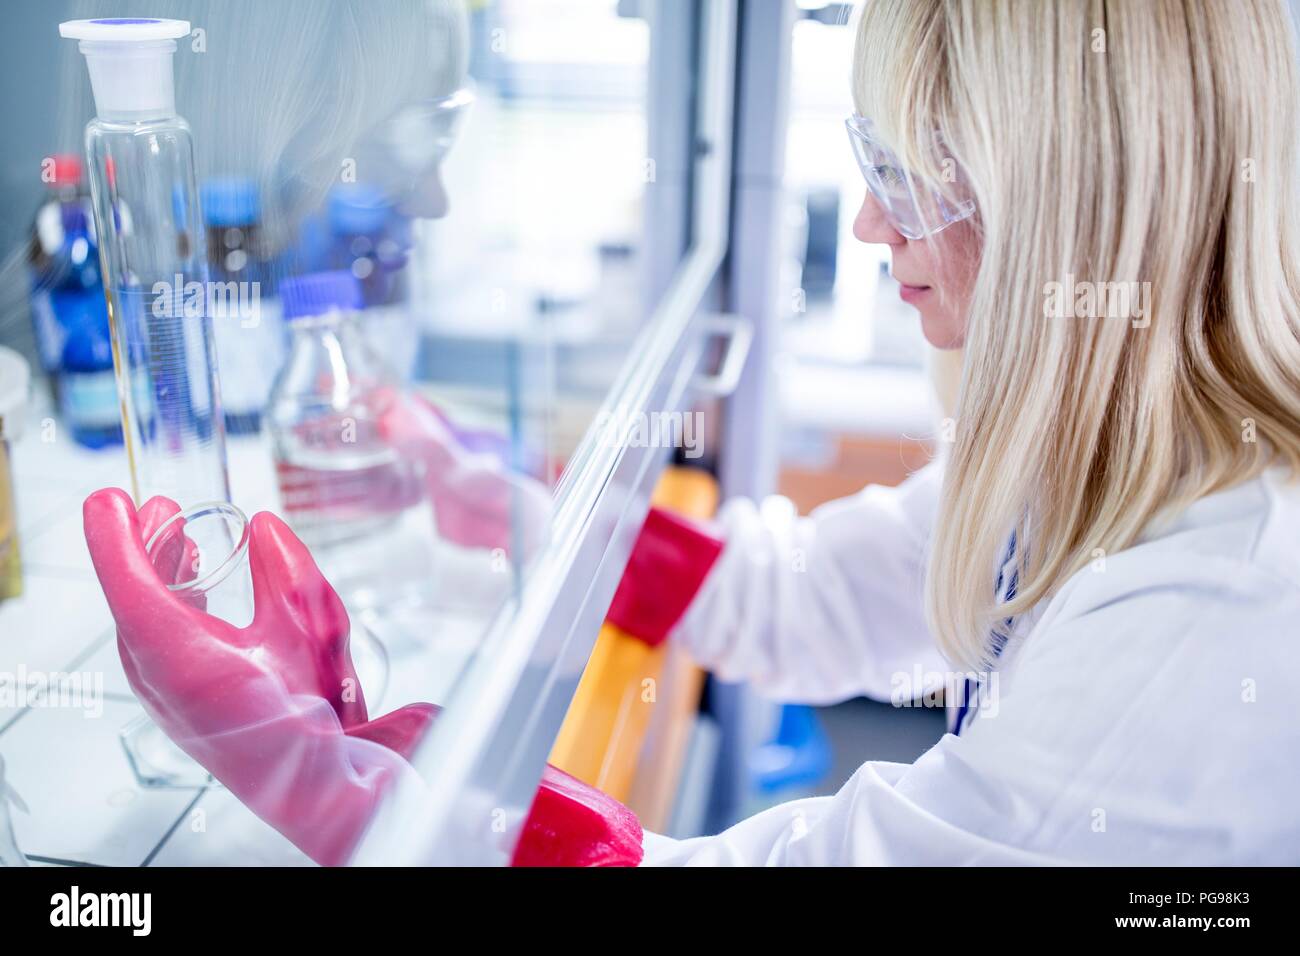 Técnico de laboratorio utilizando una campana de flujo laminar, guantes gruesos y gafas de seguridad al trabajar con productos químicos peligrosos. Foto de stock